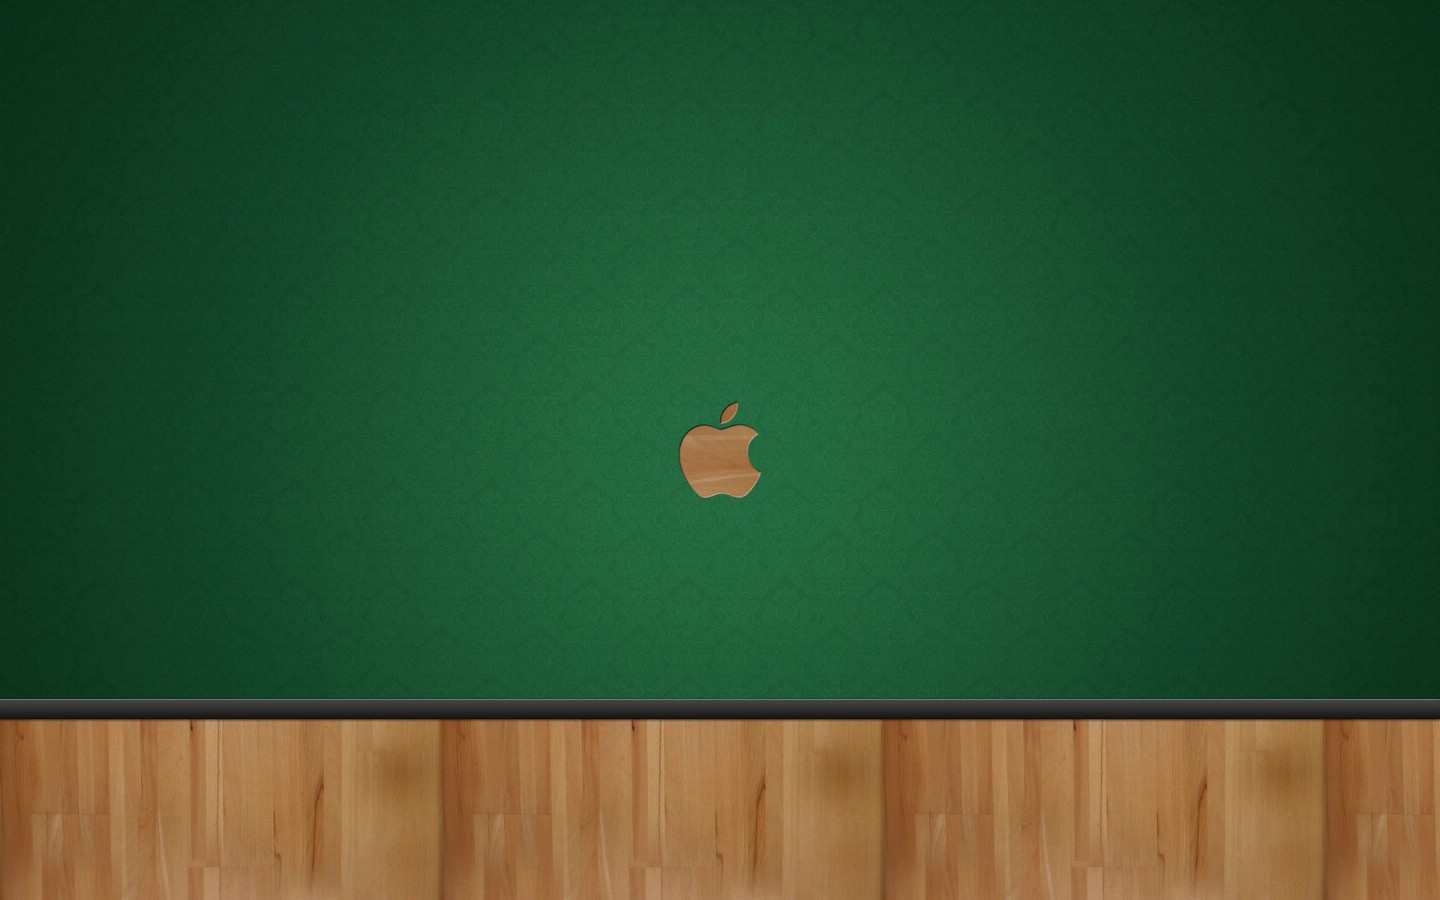 壁纸1440x900Apple主题宽屏壁纸壁纸 Apple主题宽屏壁纸壁纸 Apple主题宽屏壁纸图片 Apple主题宽屏壁纸素材 创意壁纸 创意图库 创意图片素材桌面壁纸